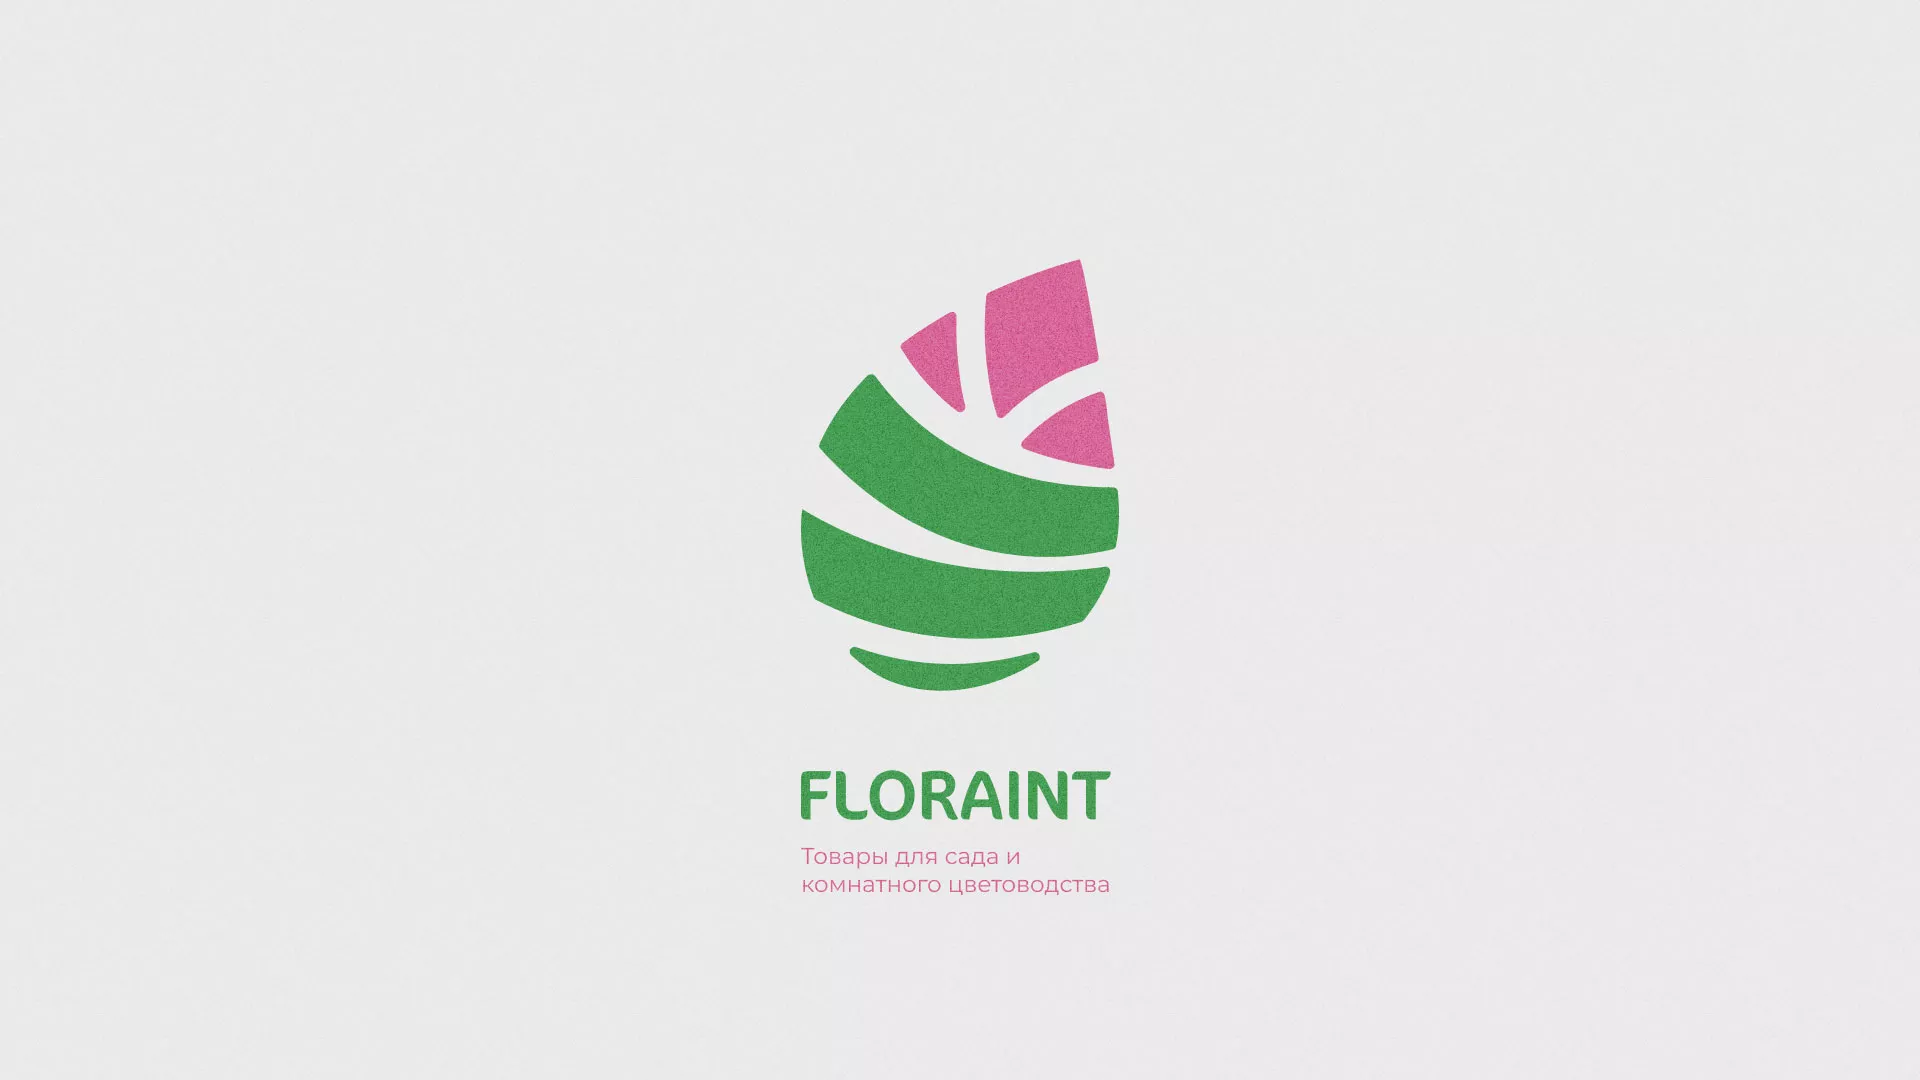 Разработка оформления профиля Instagram для магазина «Floraint» в Болхове